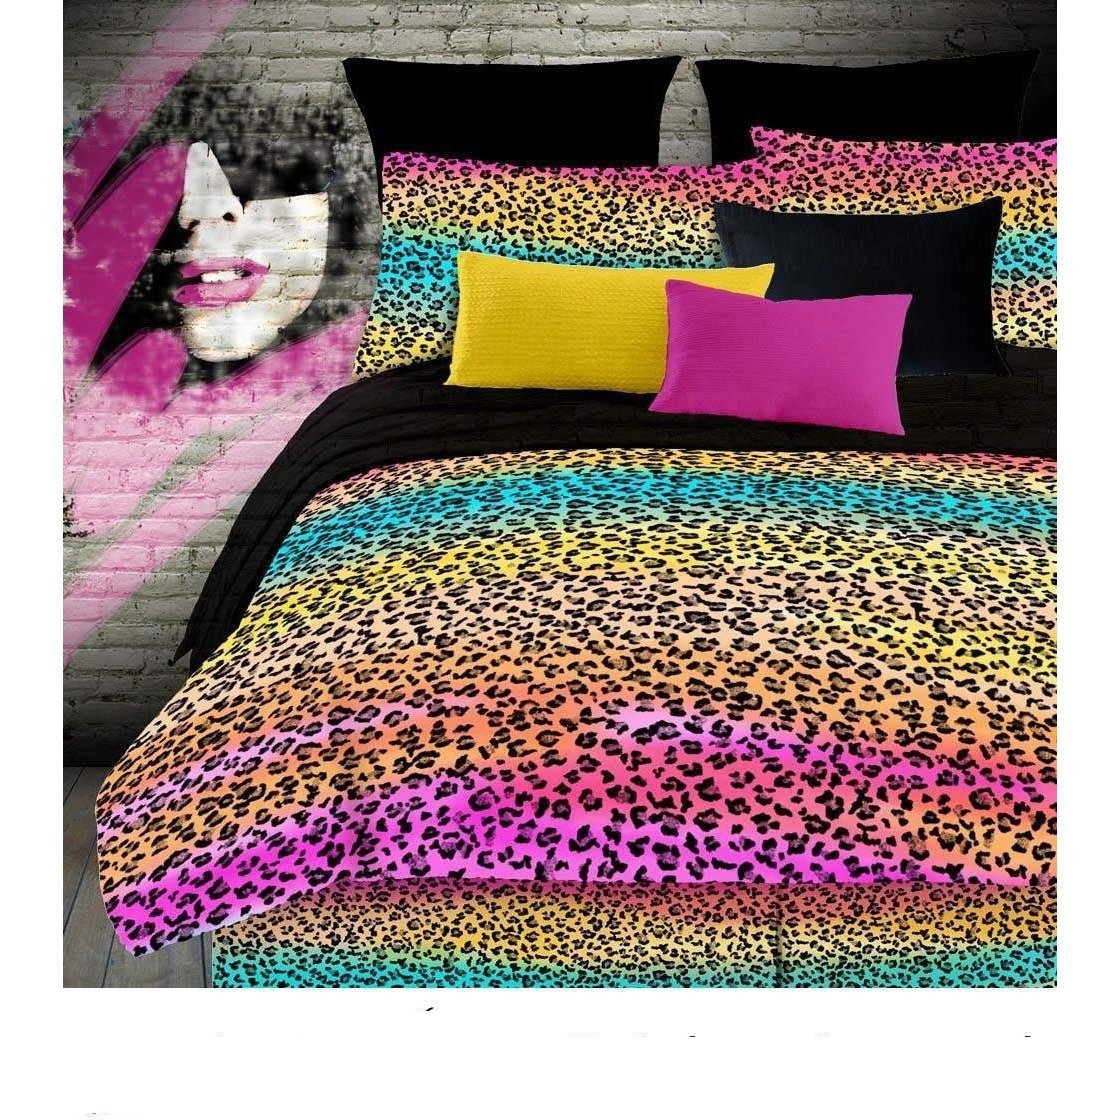 Rainbow Leopard Sleep Over Bag - Multi Color